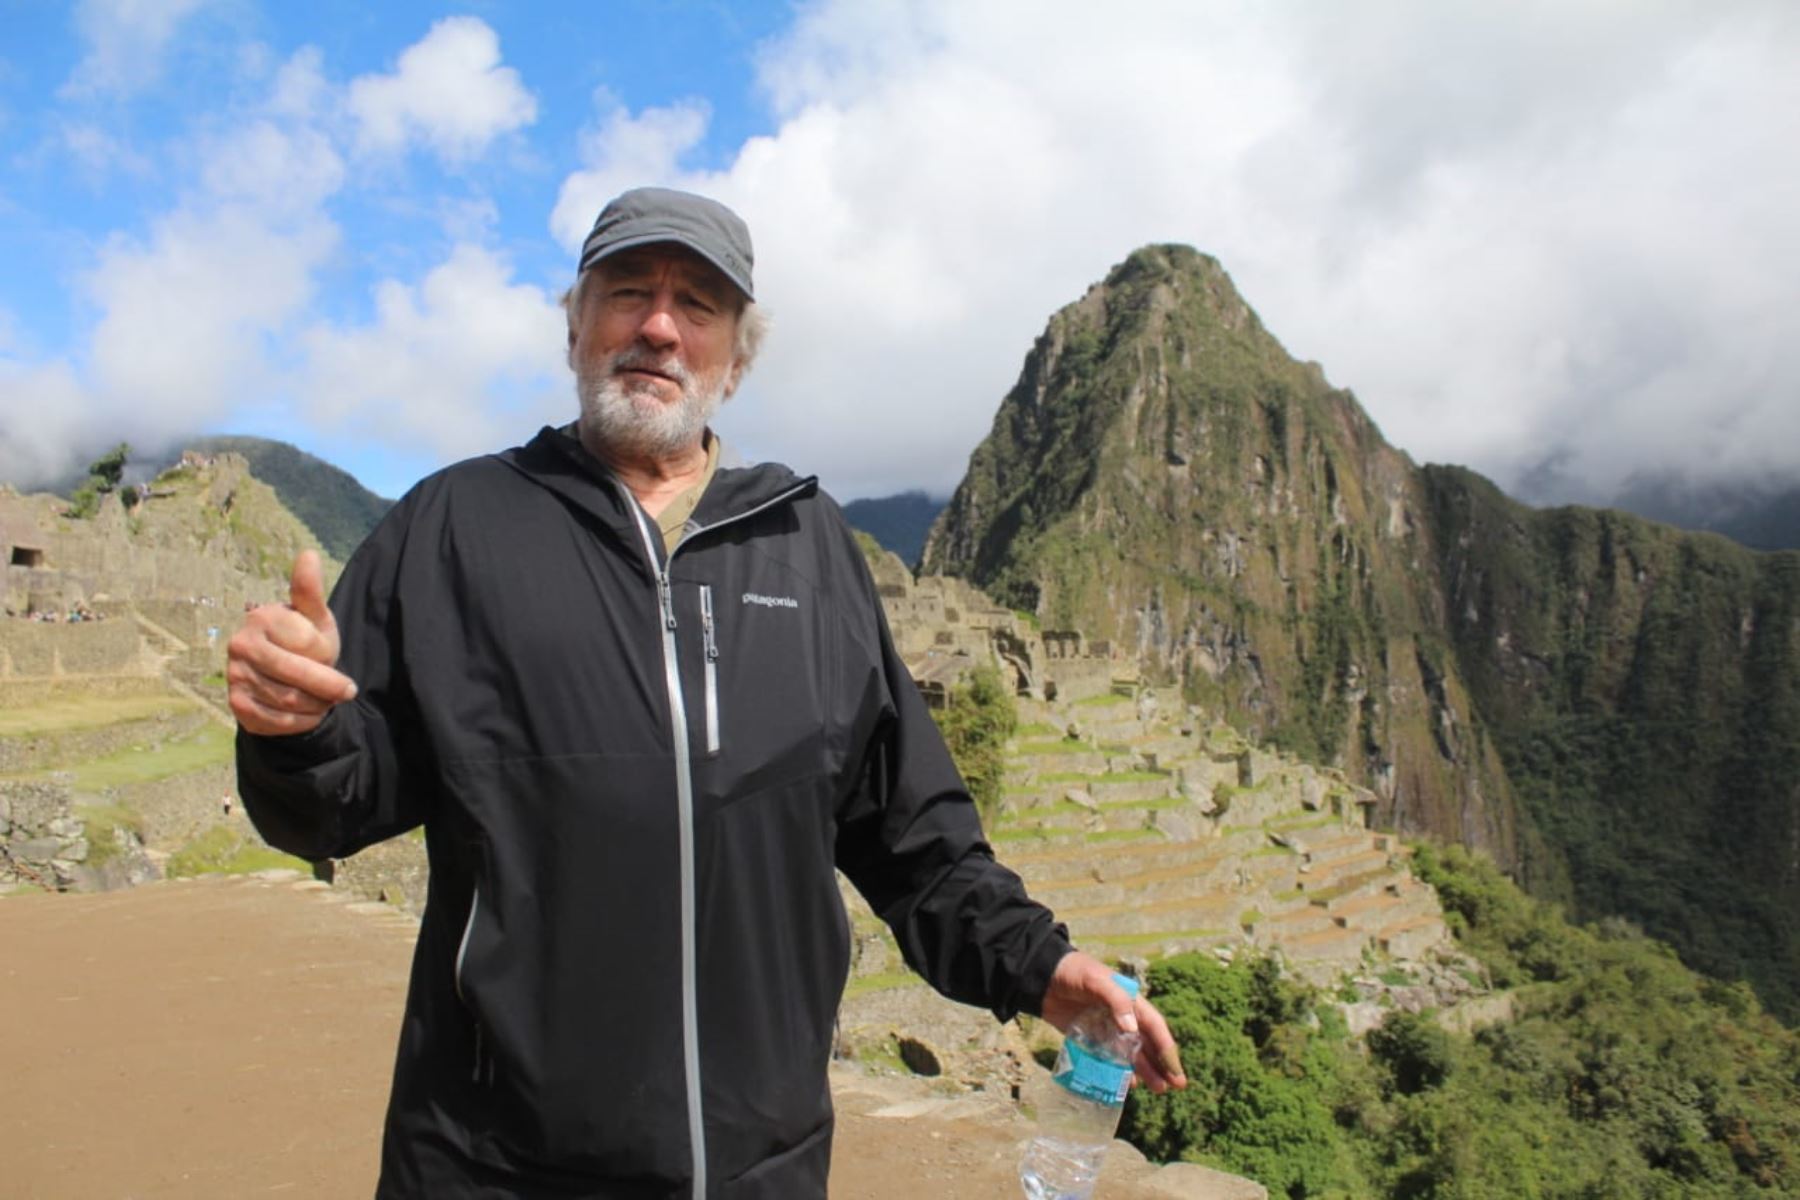 Machu Picchu maravilla a Robert De Niro y actor decide quedarse un día más. ANDINA/Percy Hurtado Santillán